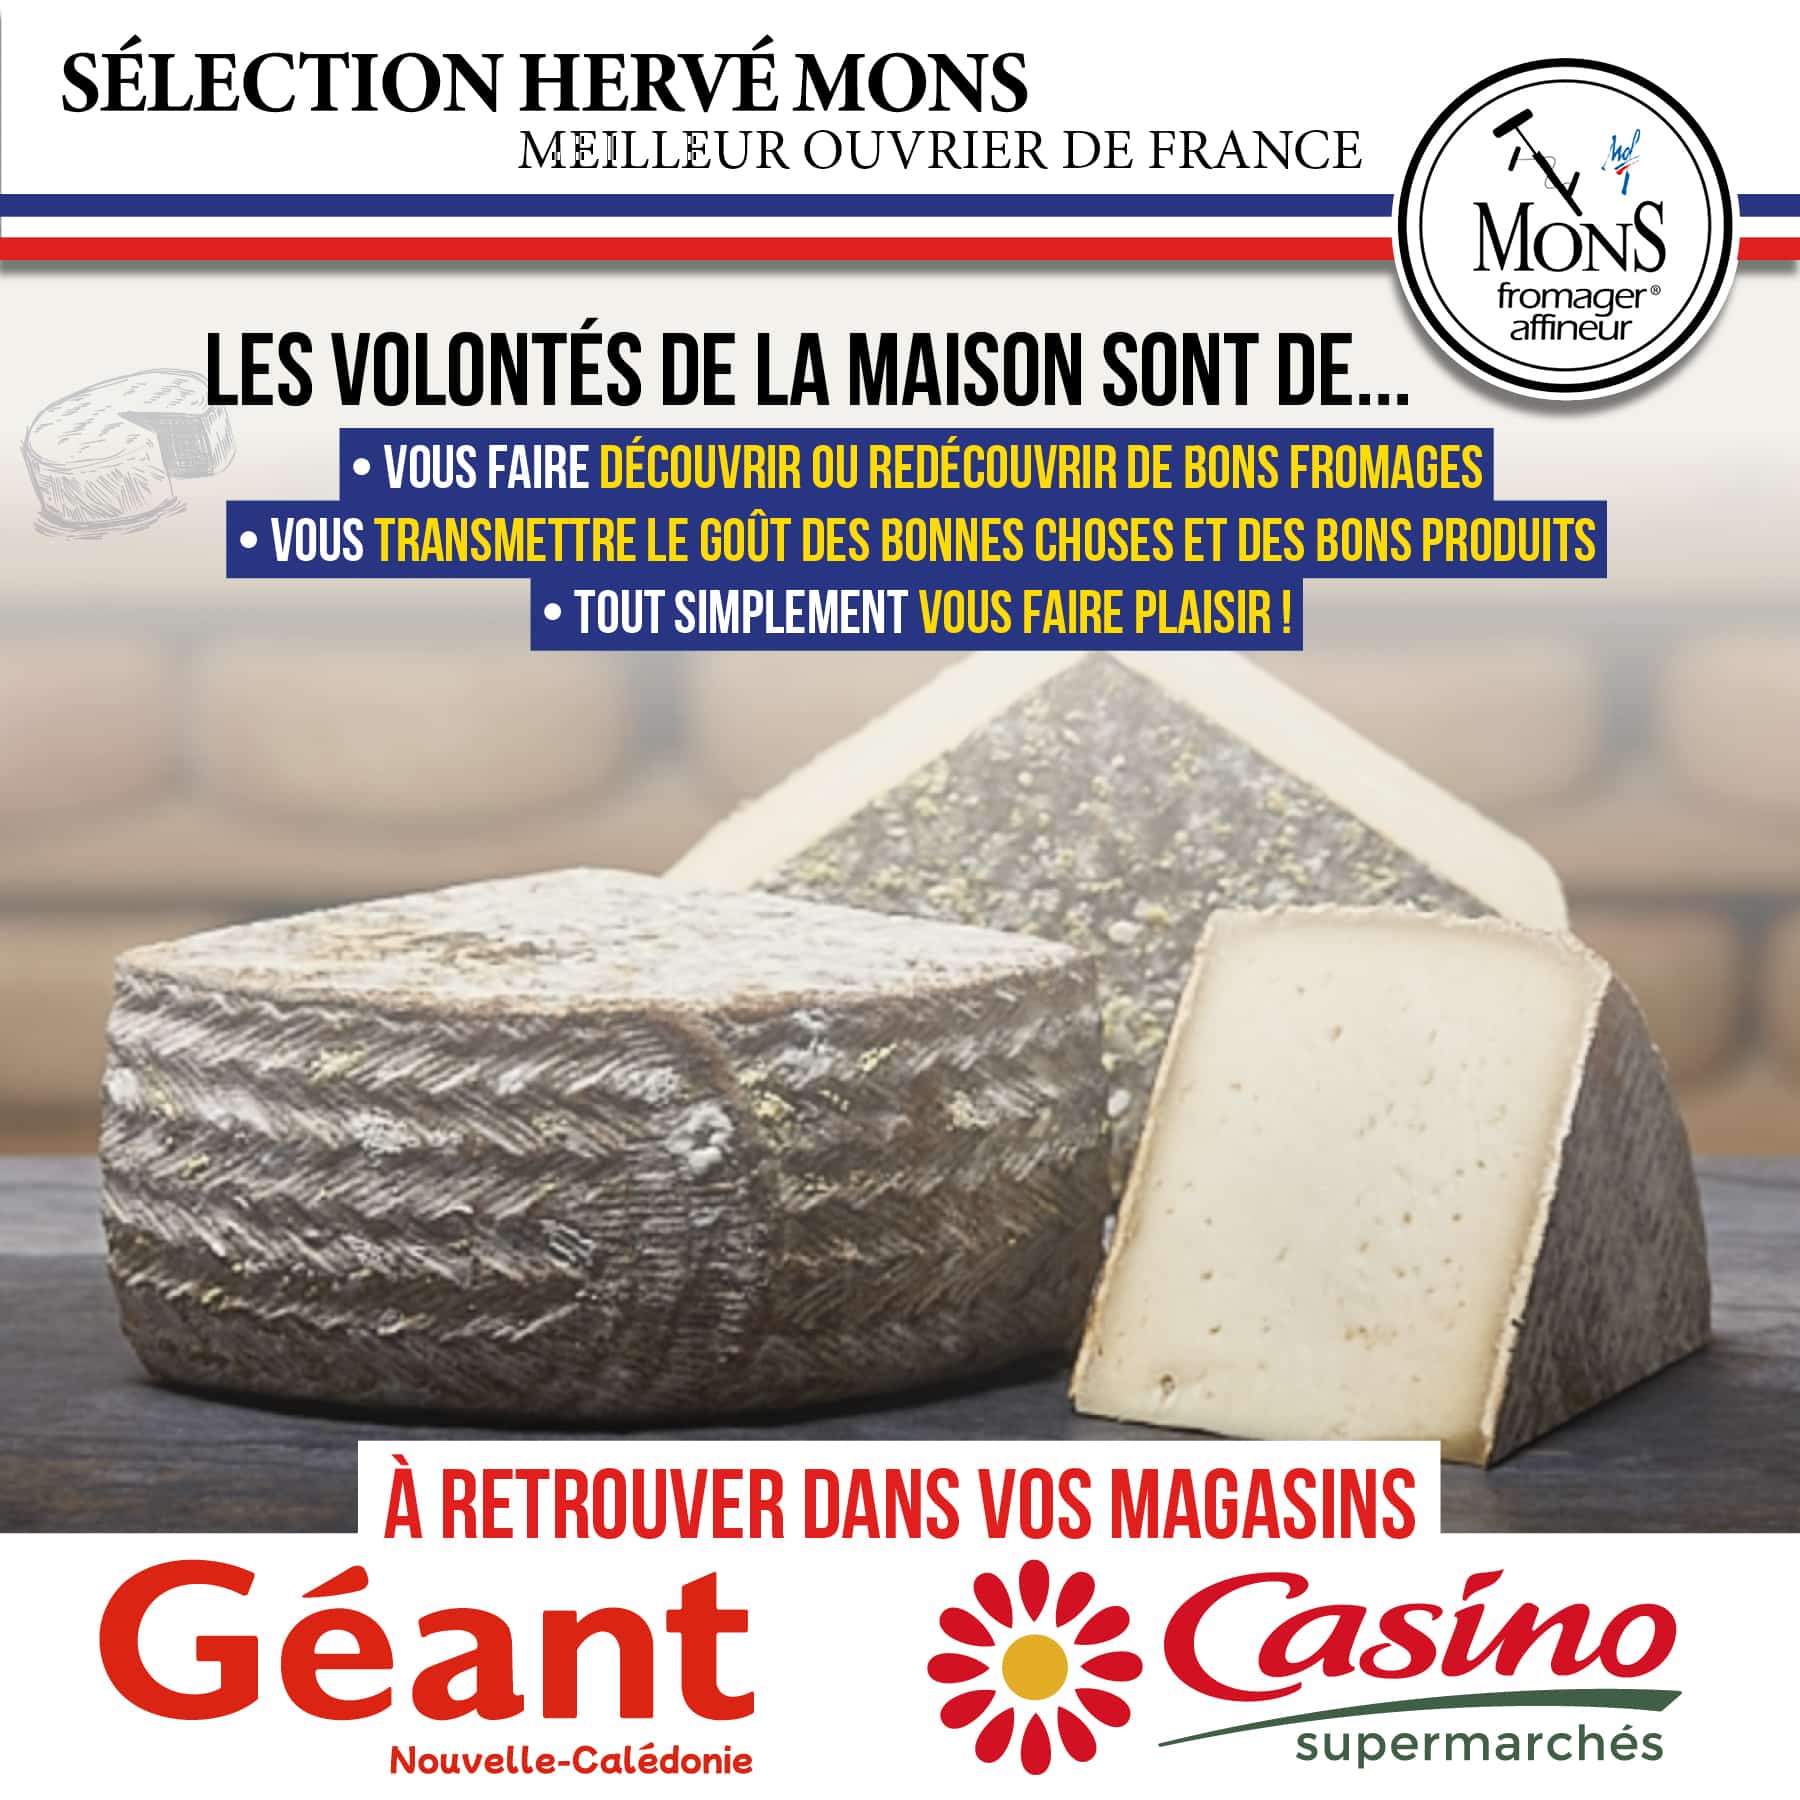 ⭐️ (Re)Découvrez les produits laitiers du maître fromager & affineur HERVÉ MONS